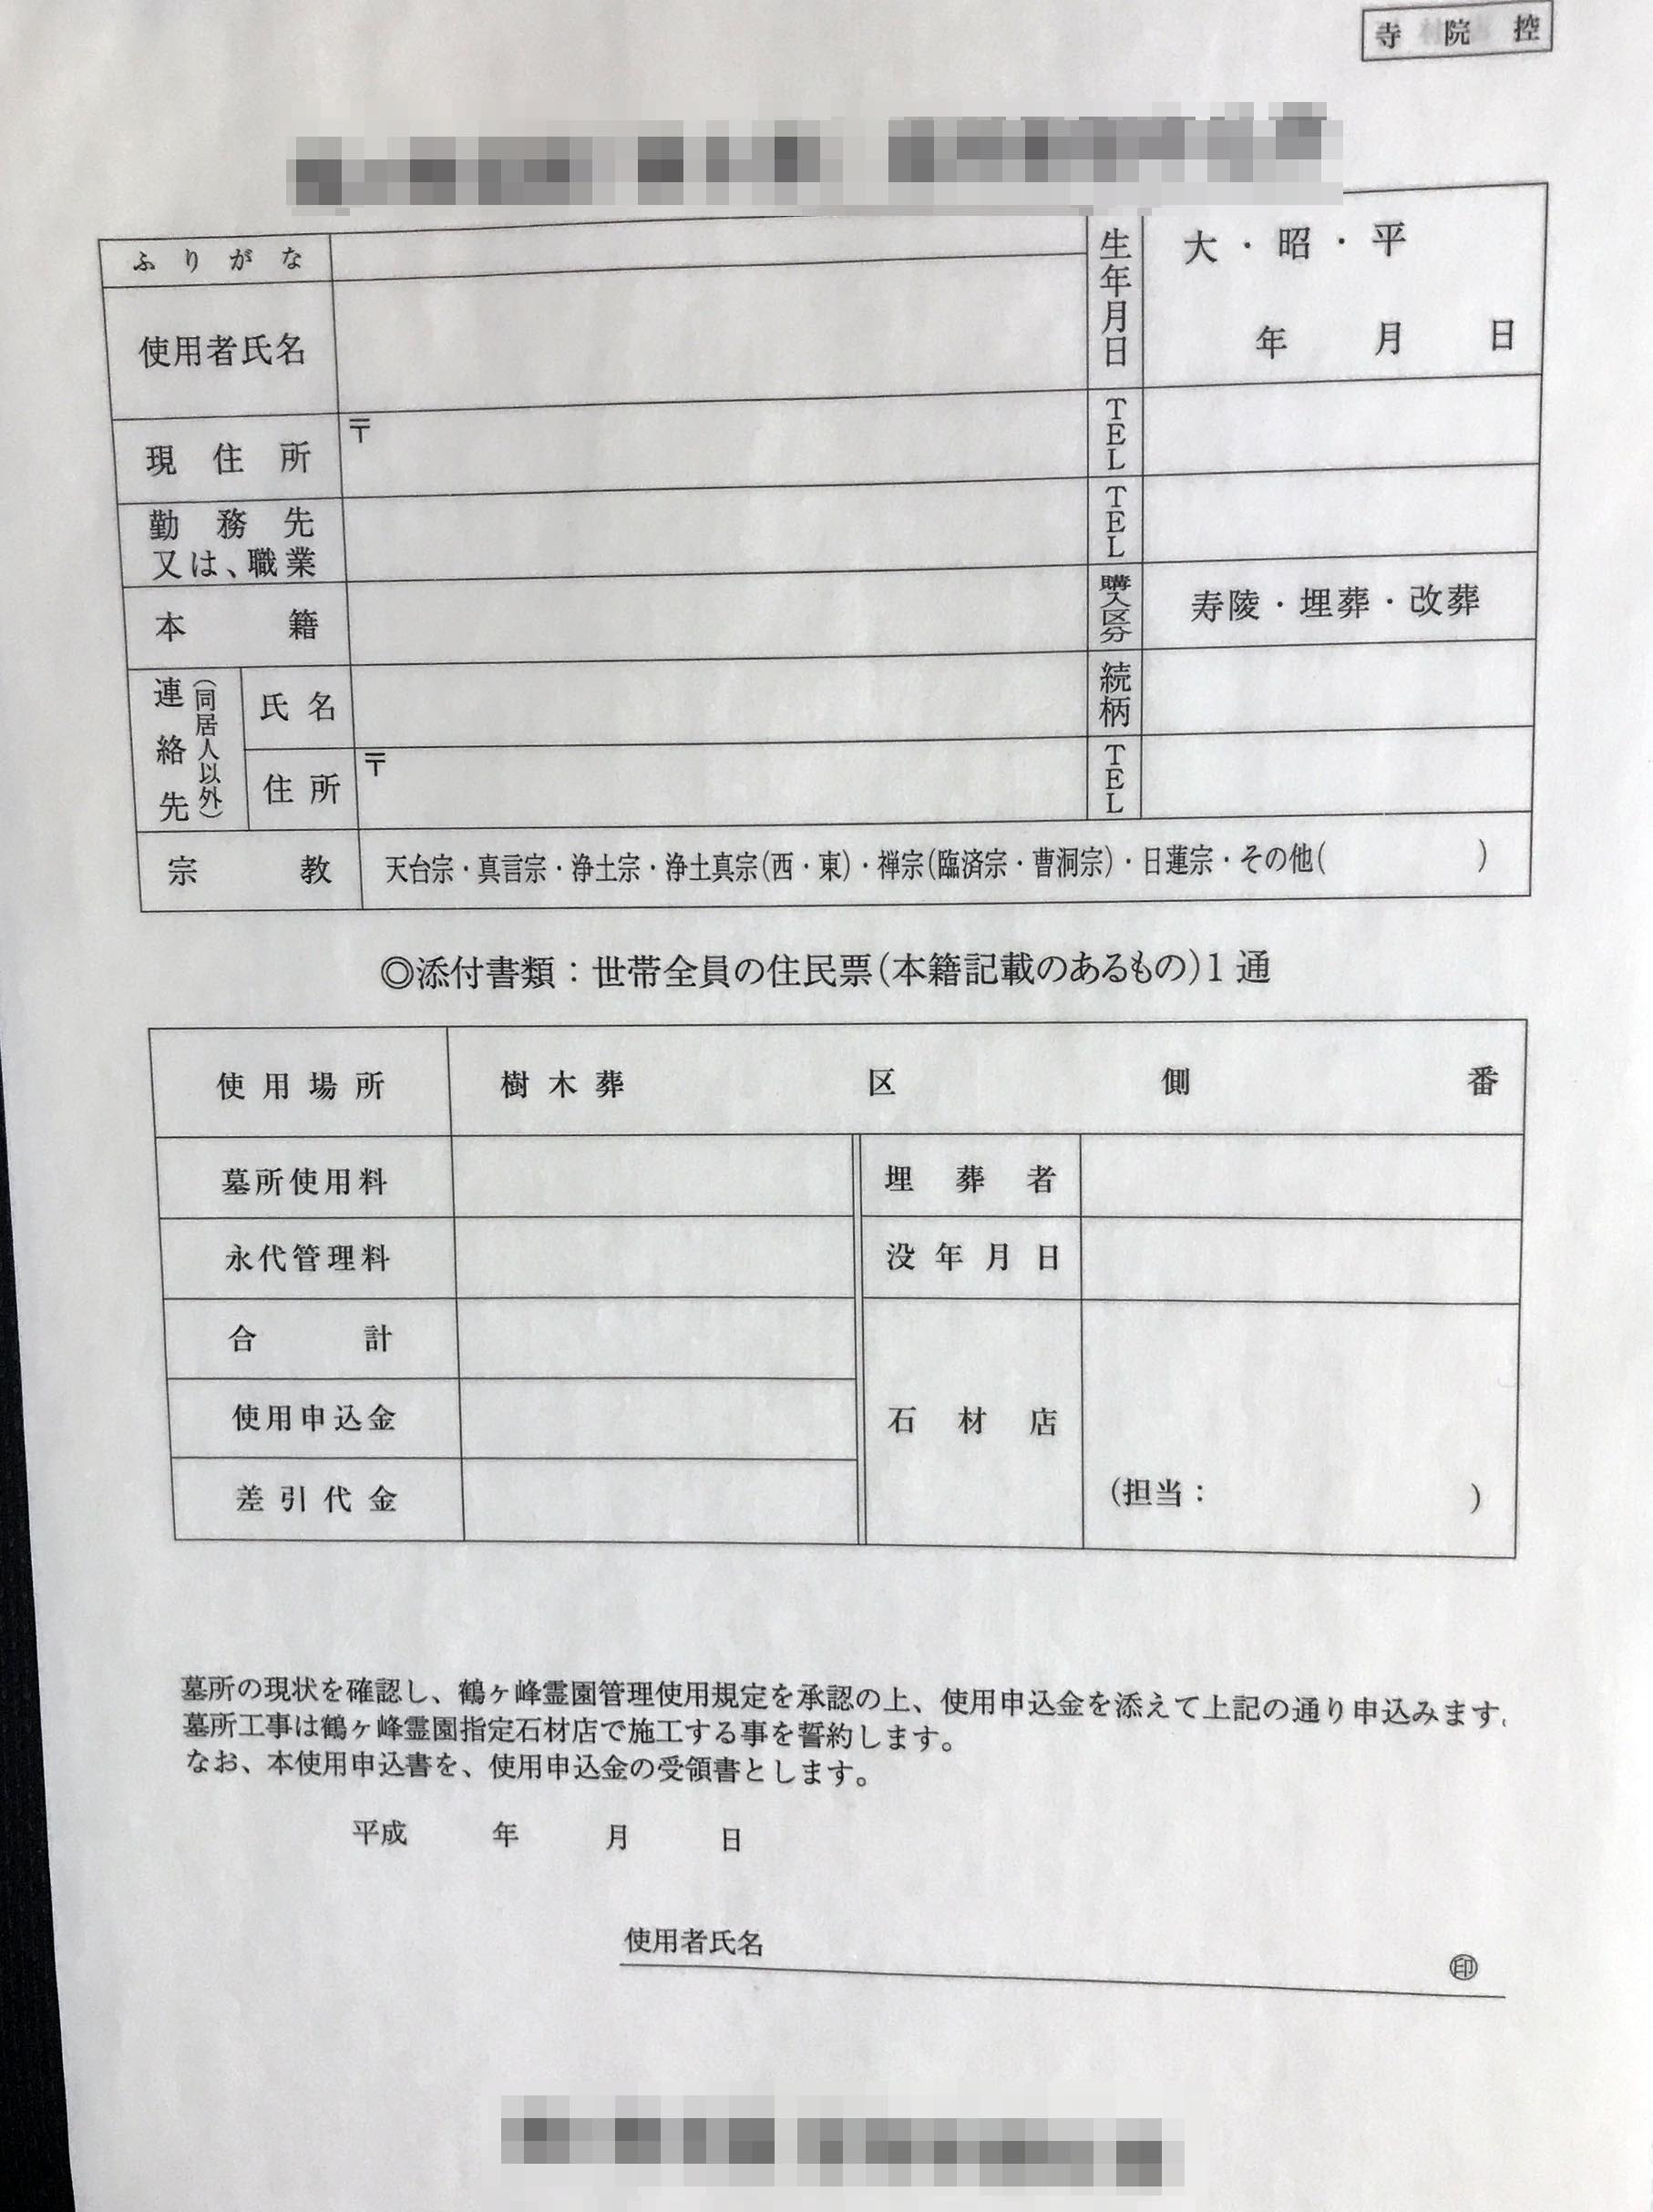 神奈川県　寺院　樹木葬申込書　(３枚複写)